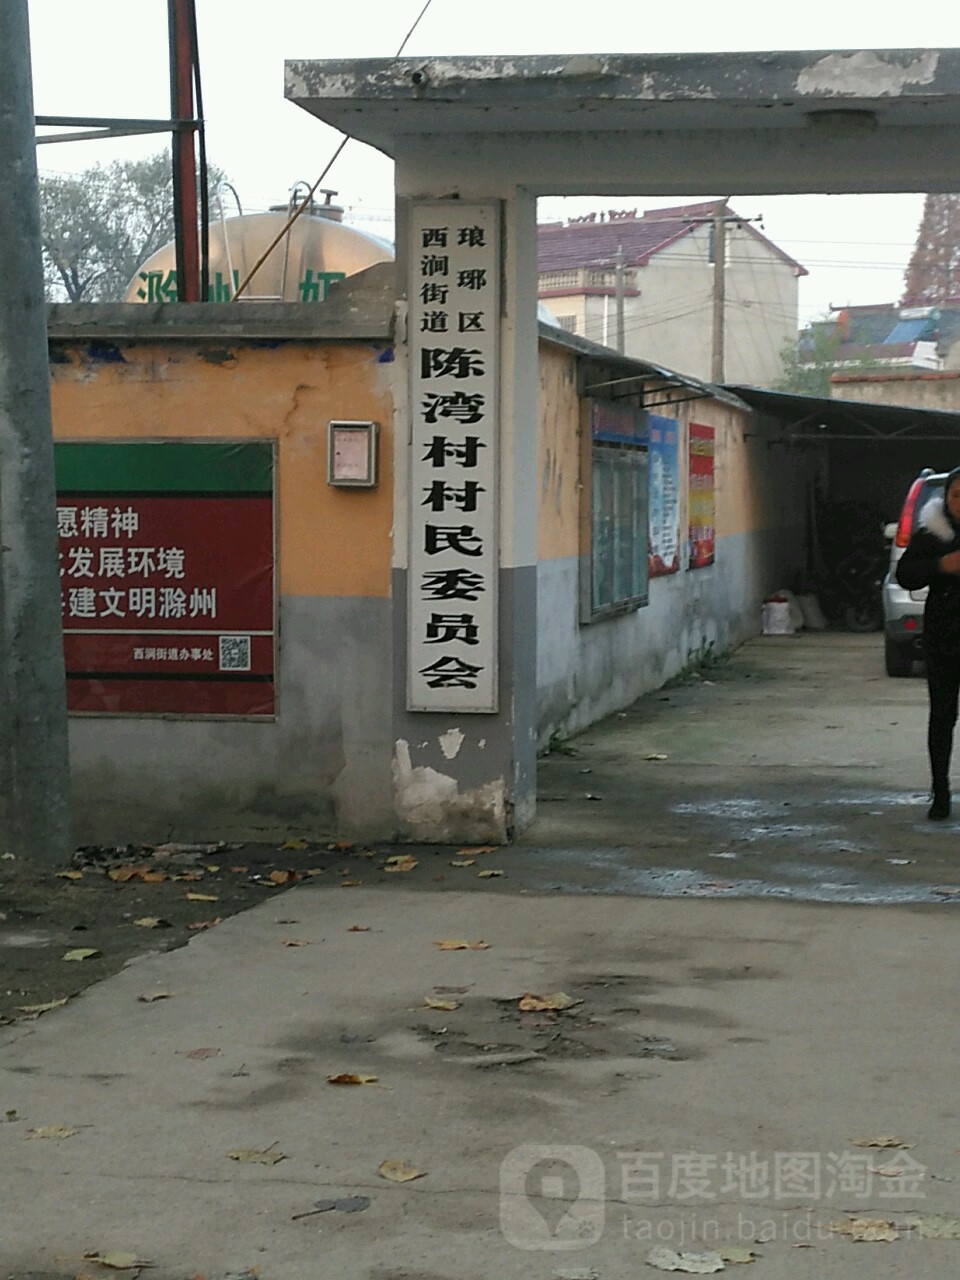 安徽省滁州市琅琊区X002(将军山路)